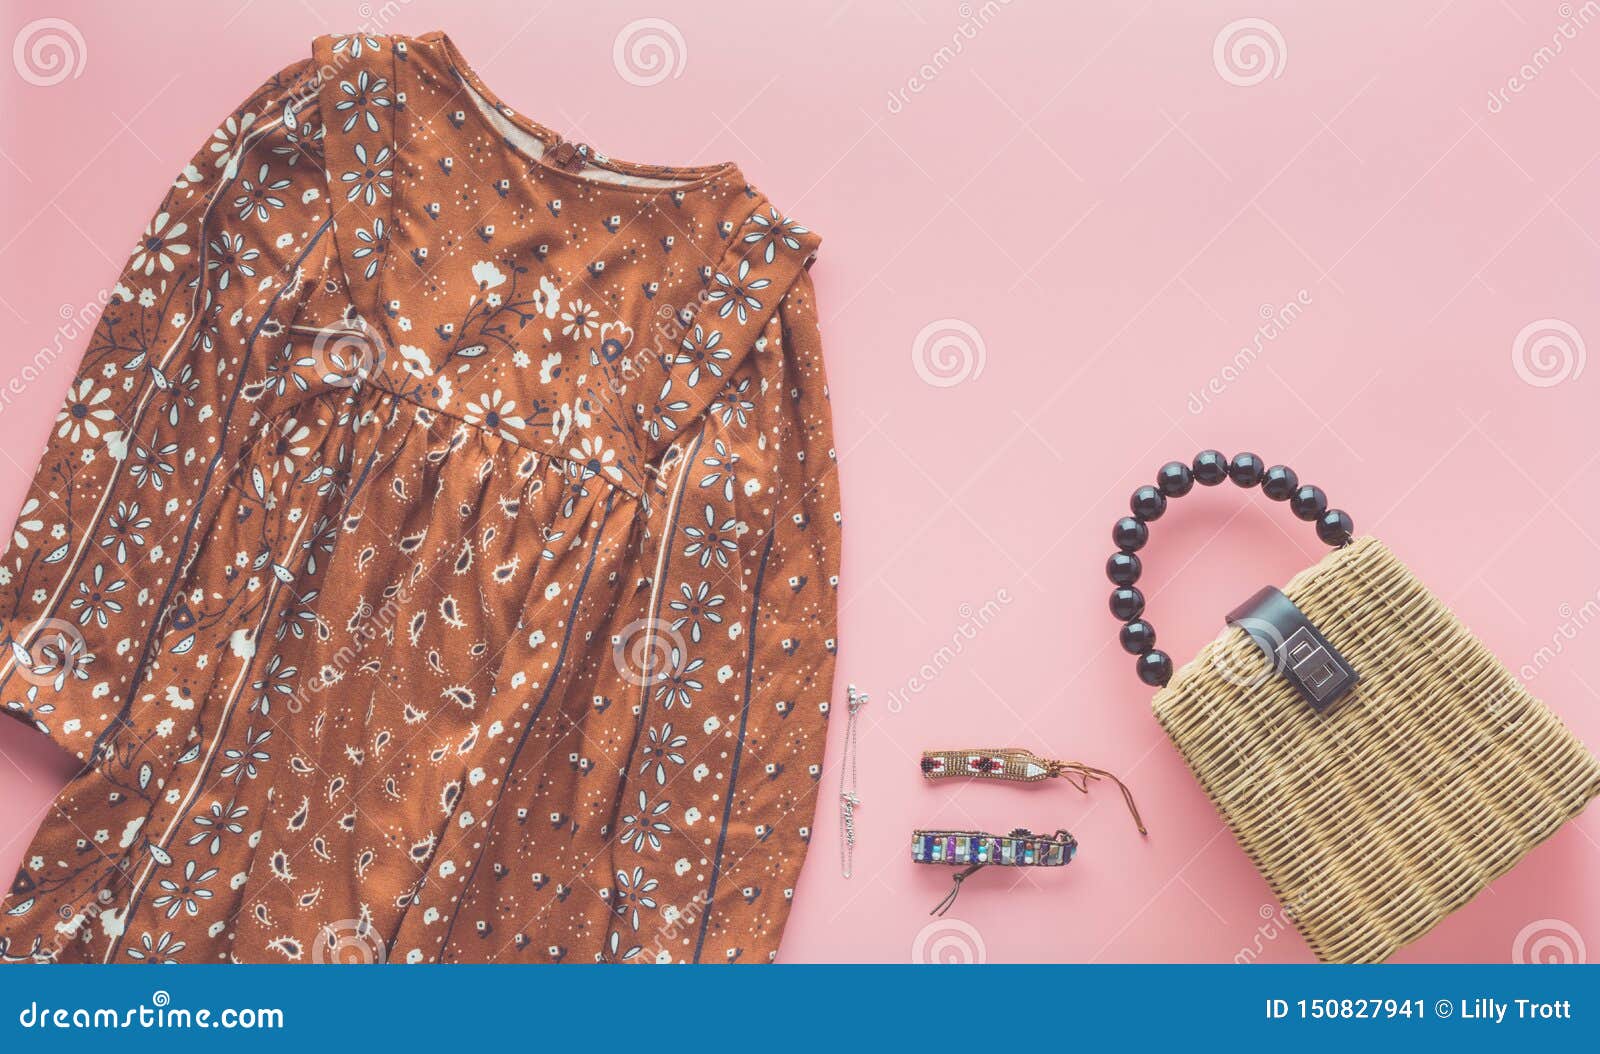 Fashion background on pink stock image. Image of retro - 150827941